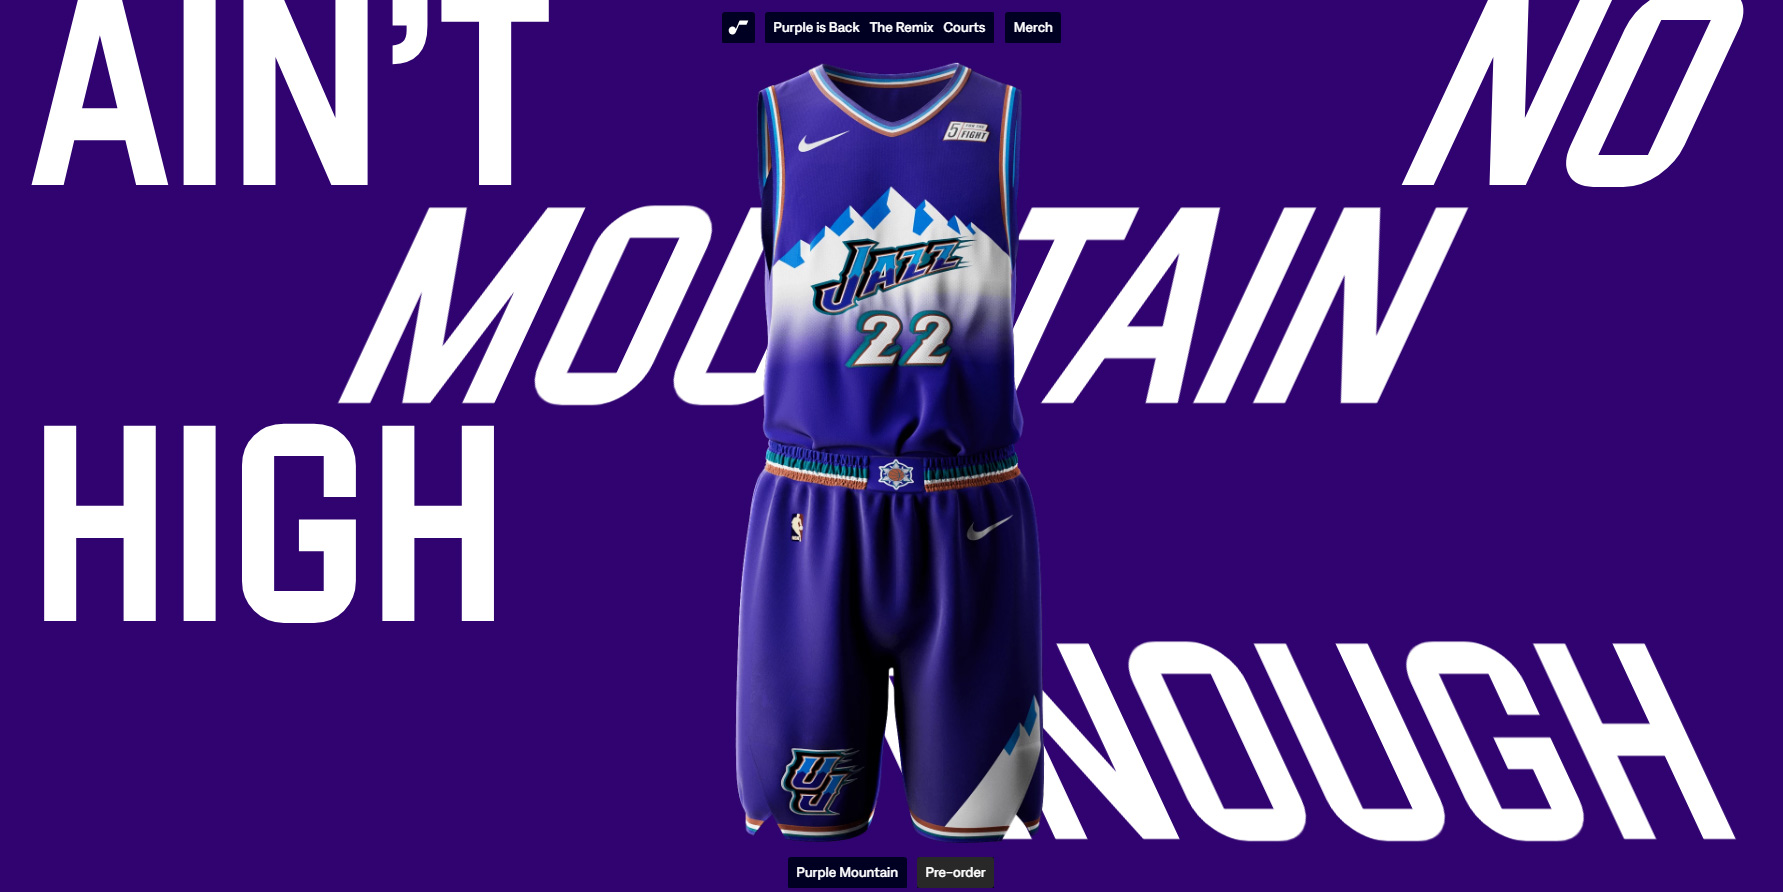 Utah Jazz - Purple is back - Website of the Day